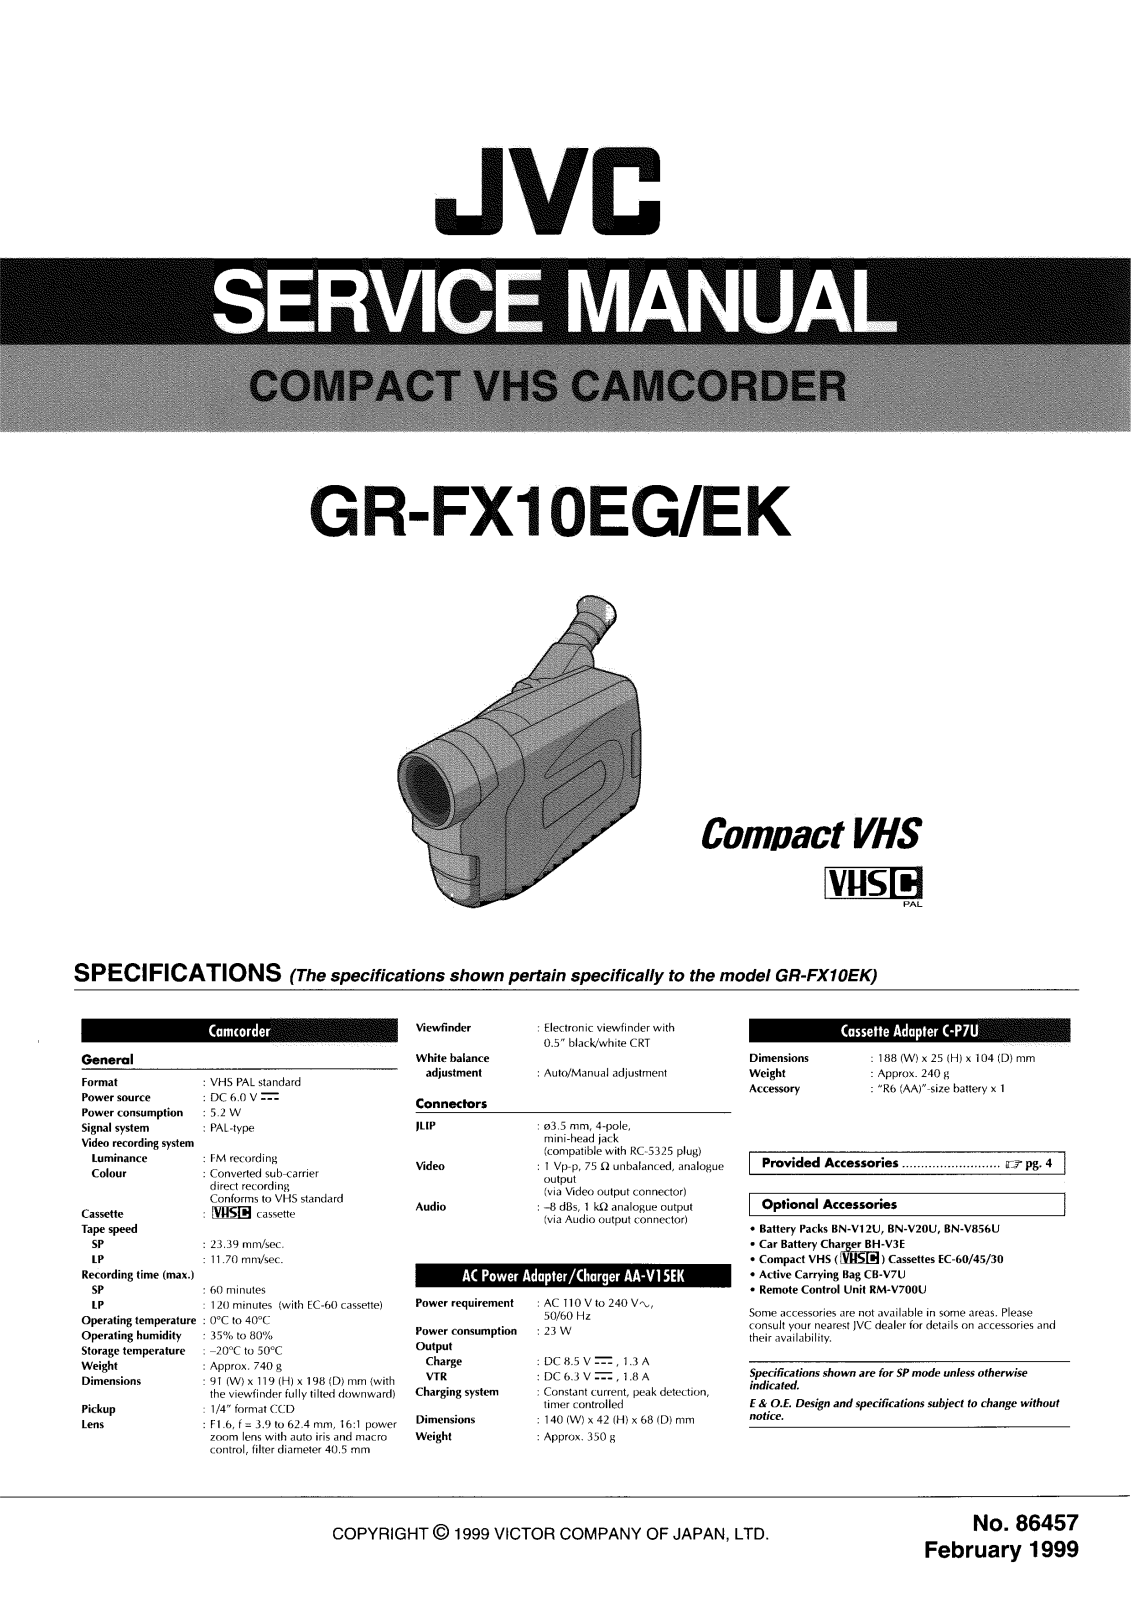 JVC GR-FX10EG, GR-FX10EK Service Manual